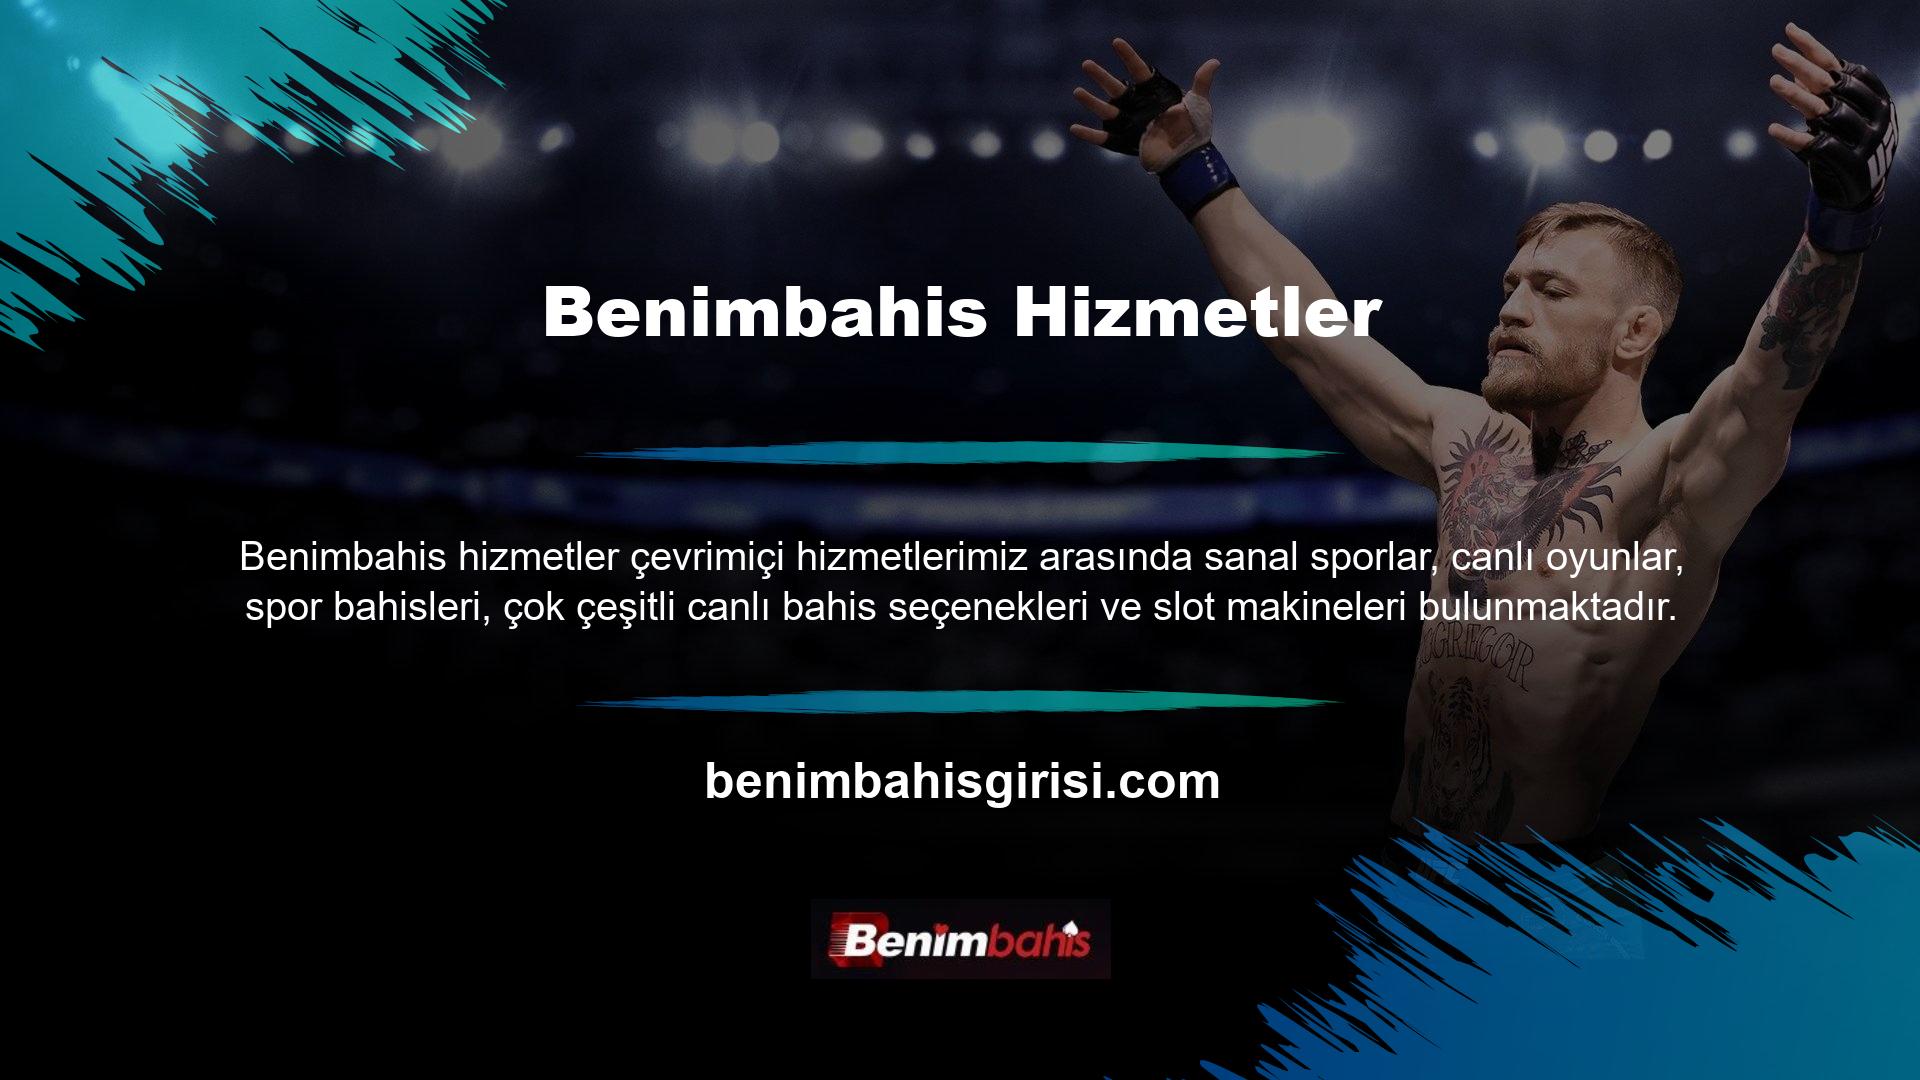 Titiz bir tasarım ve tüm Türkçe alan adlarında senkronize çeviri ile sitenin kullanıcı dostu olması sağlanmıştır